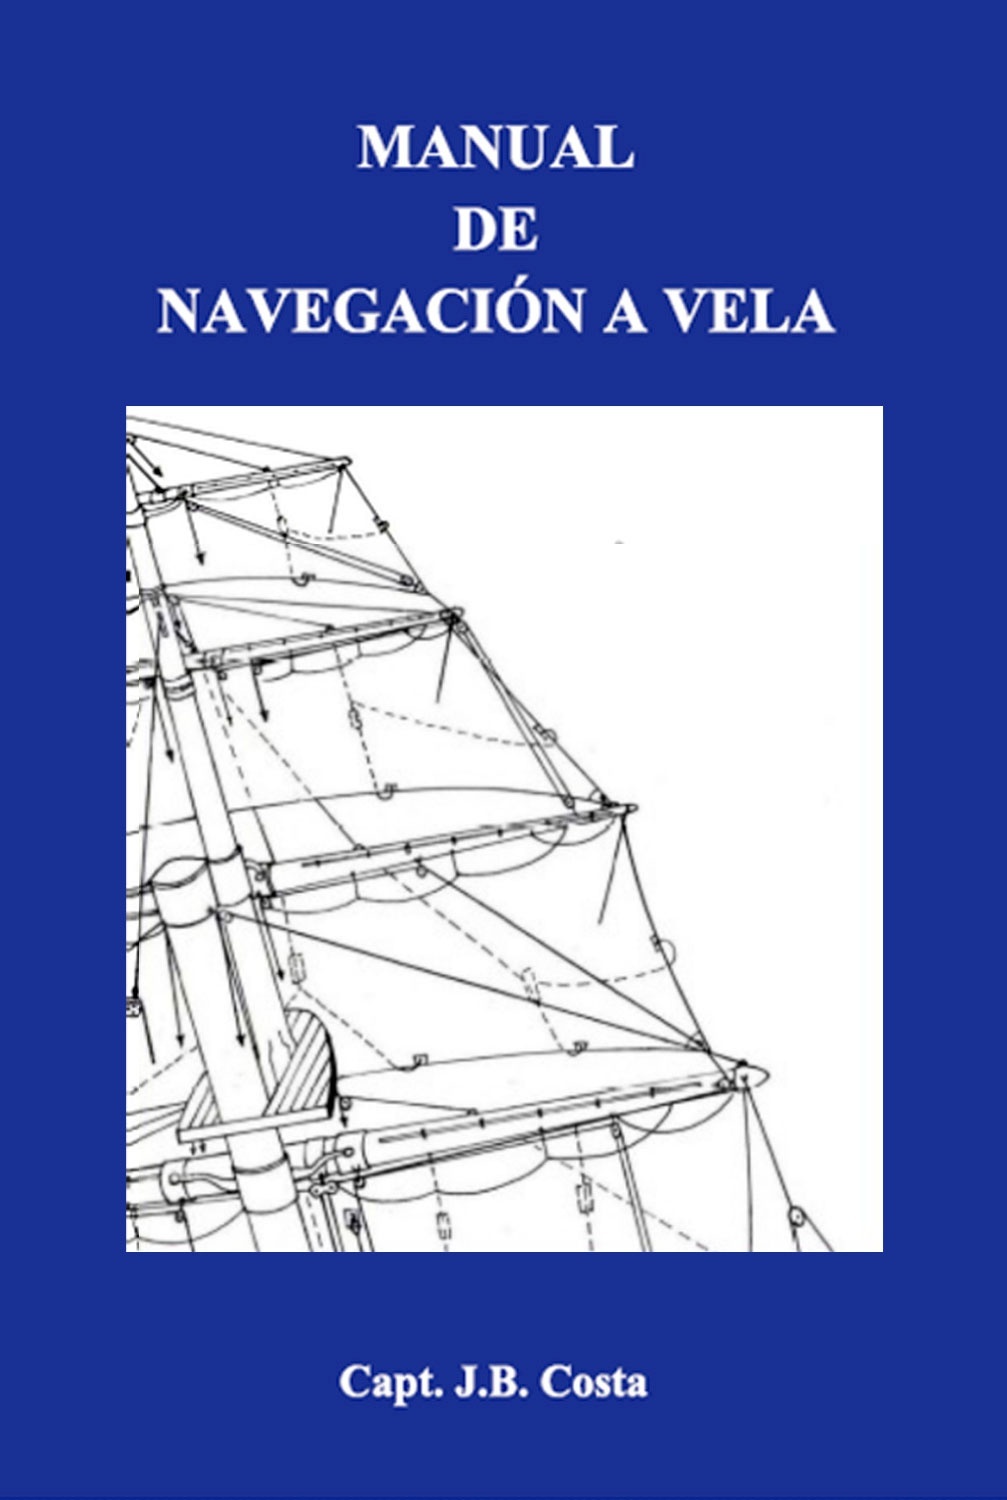 Manual de navegación a vela